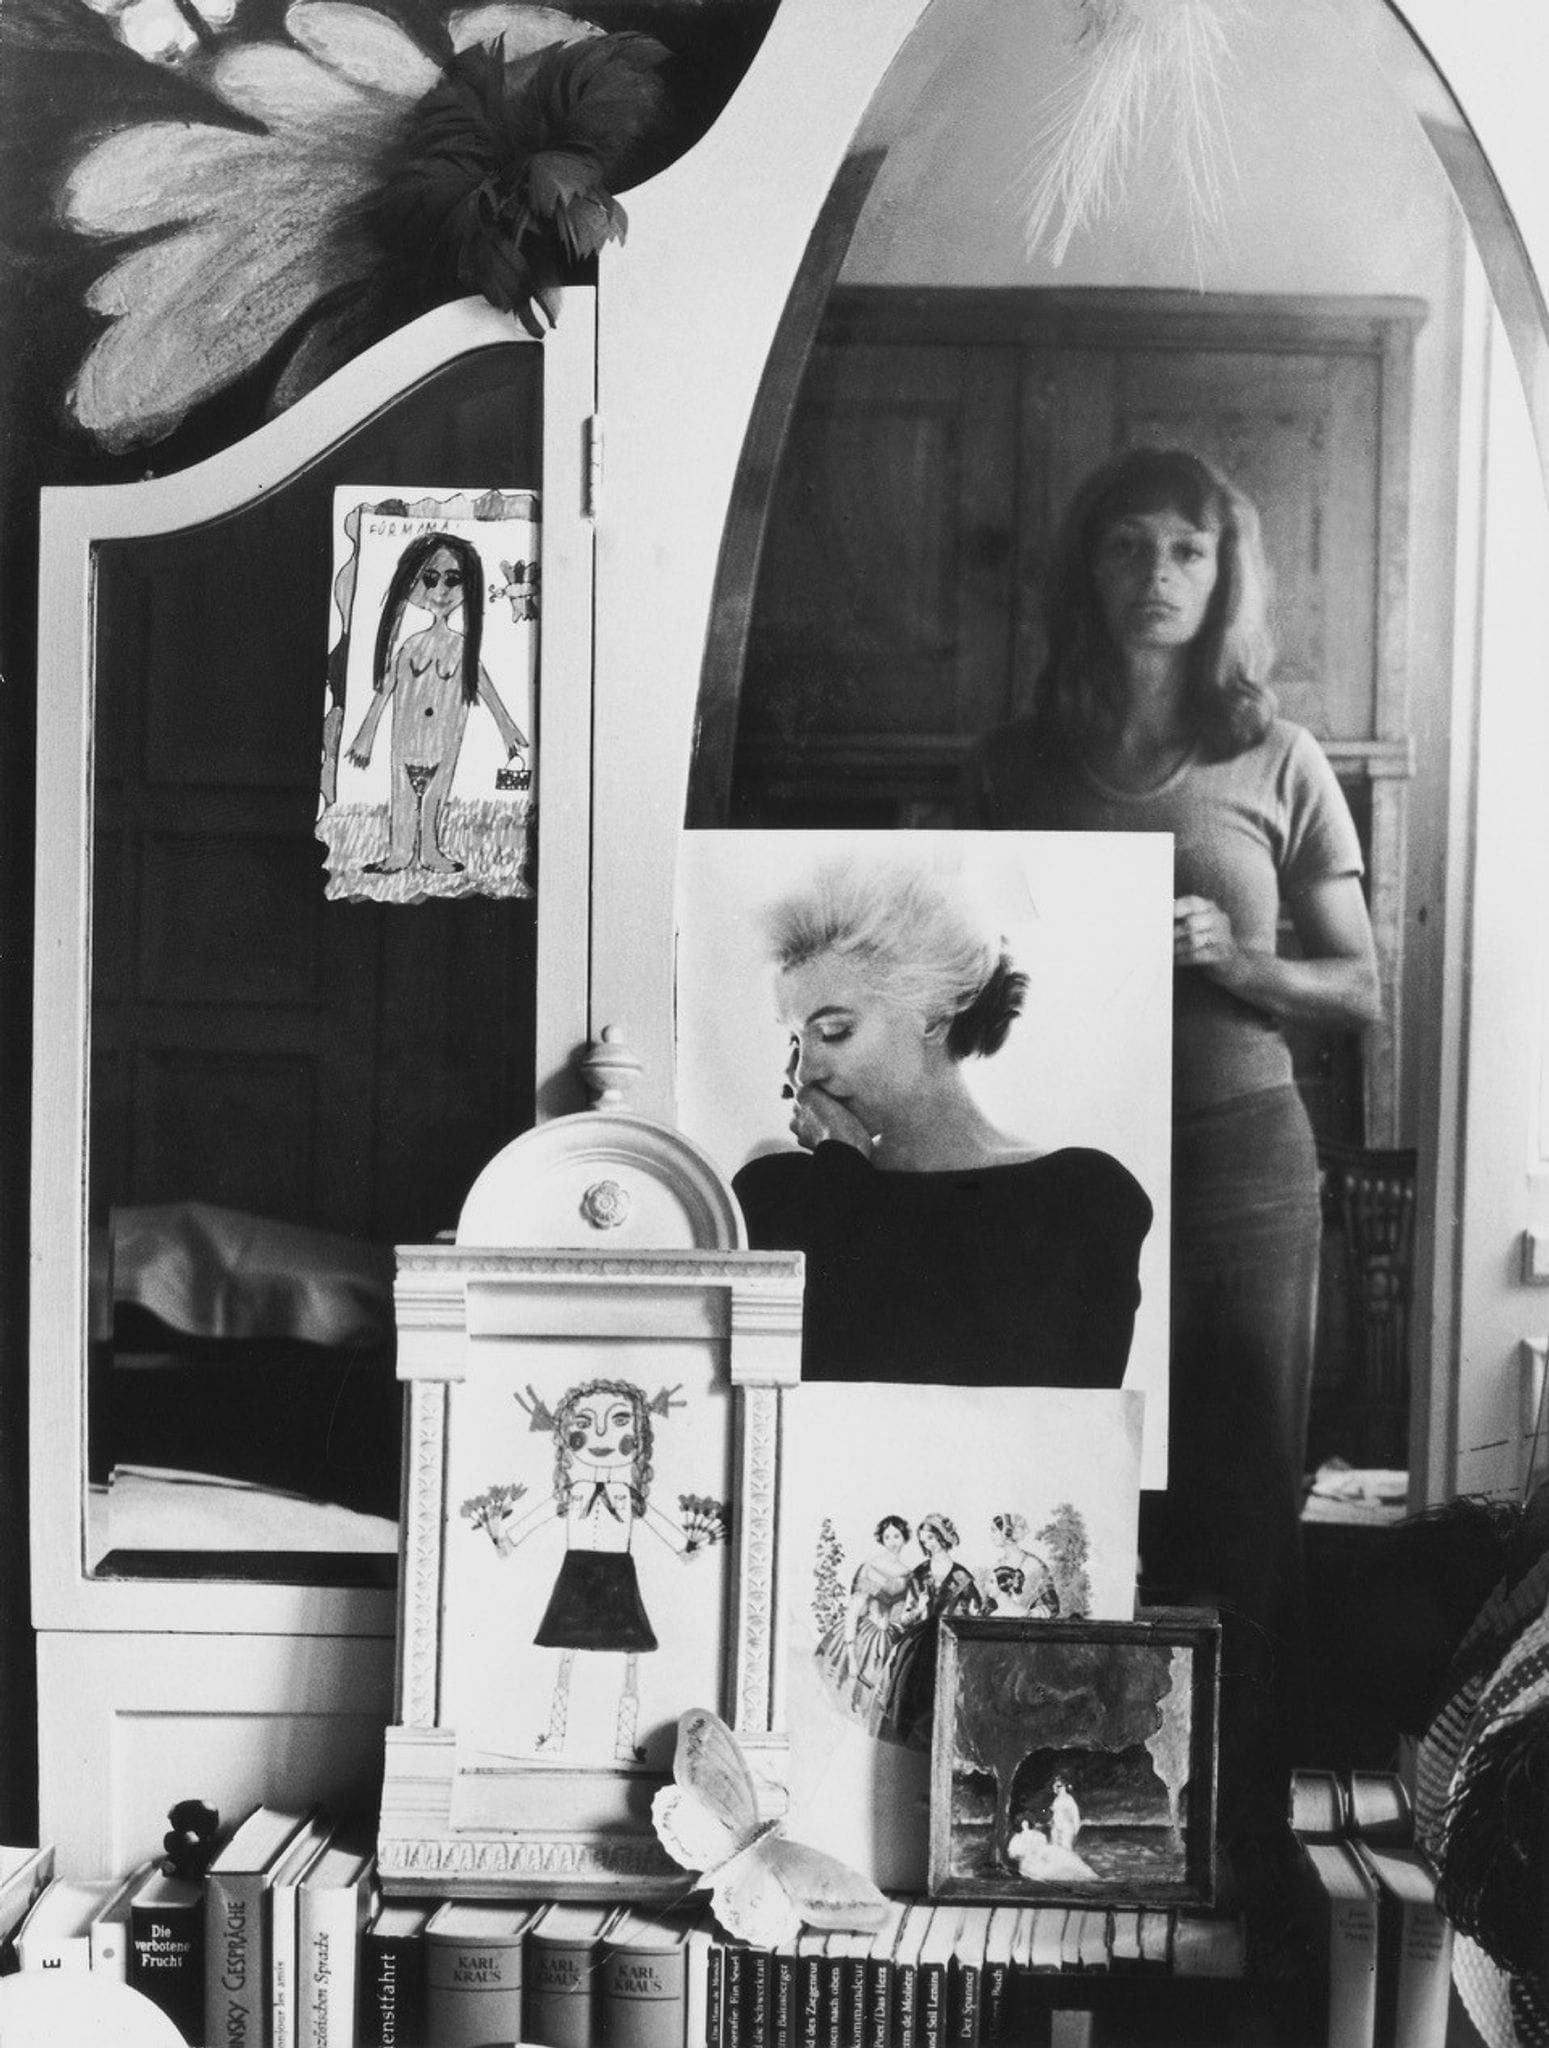 Die Fotografin Helga Paris auf dem Selbstporträt "Selbst im Spiegel", Berlin, 1971.